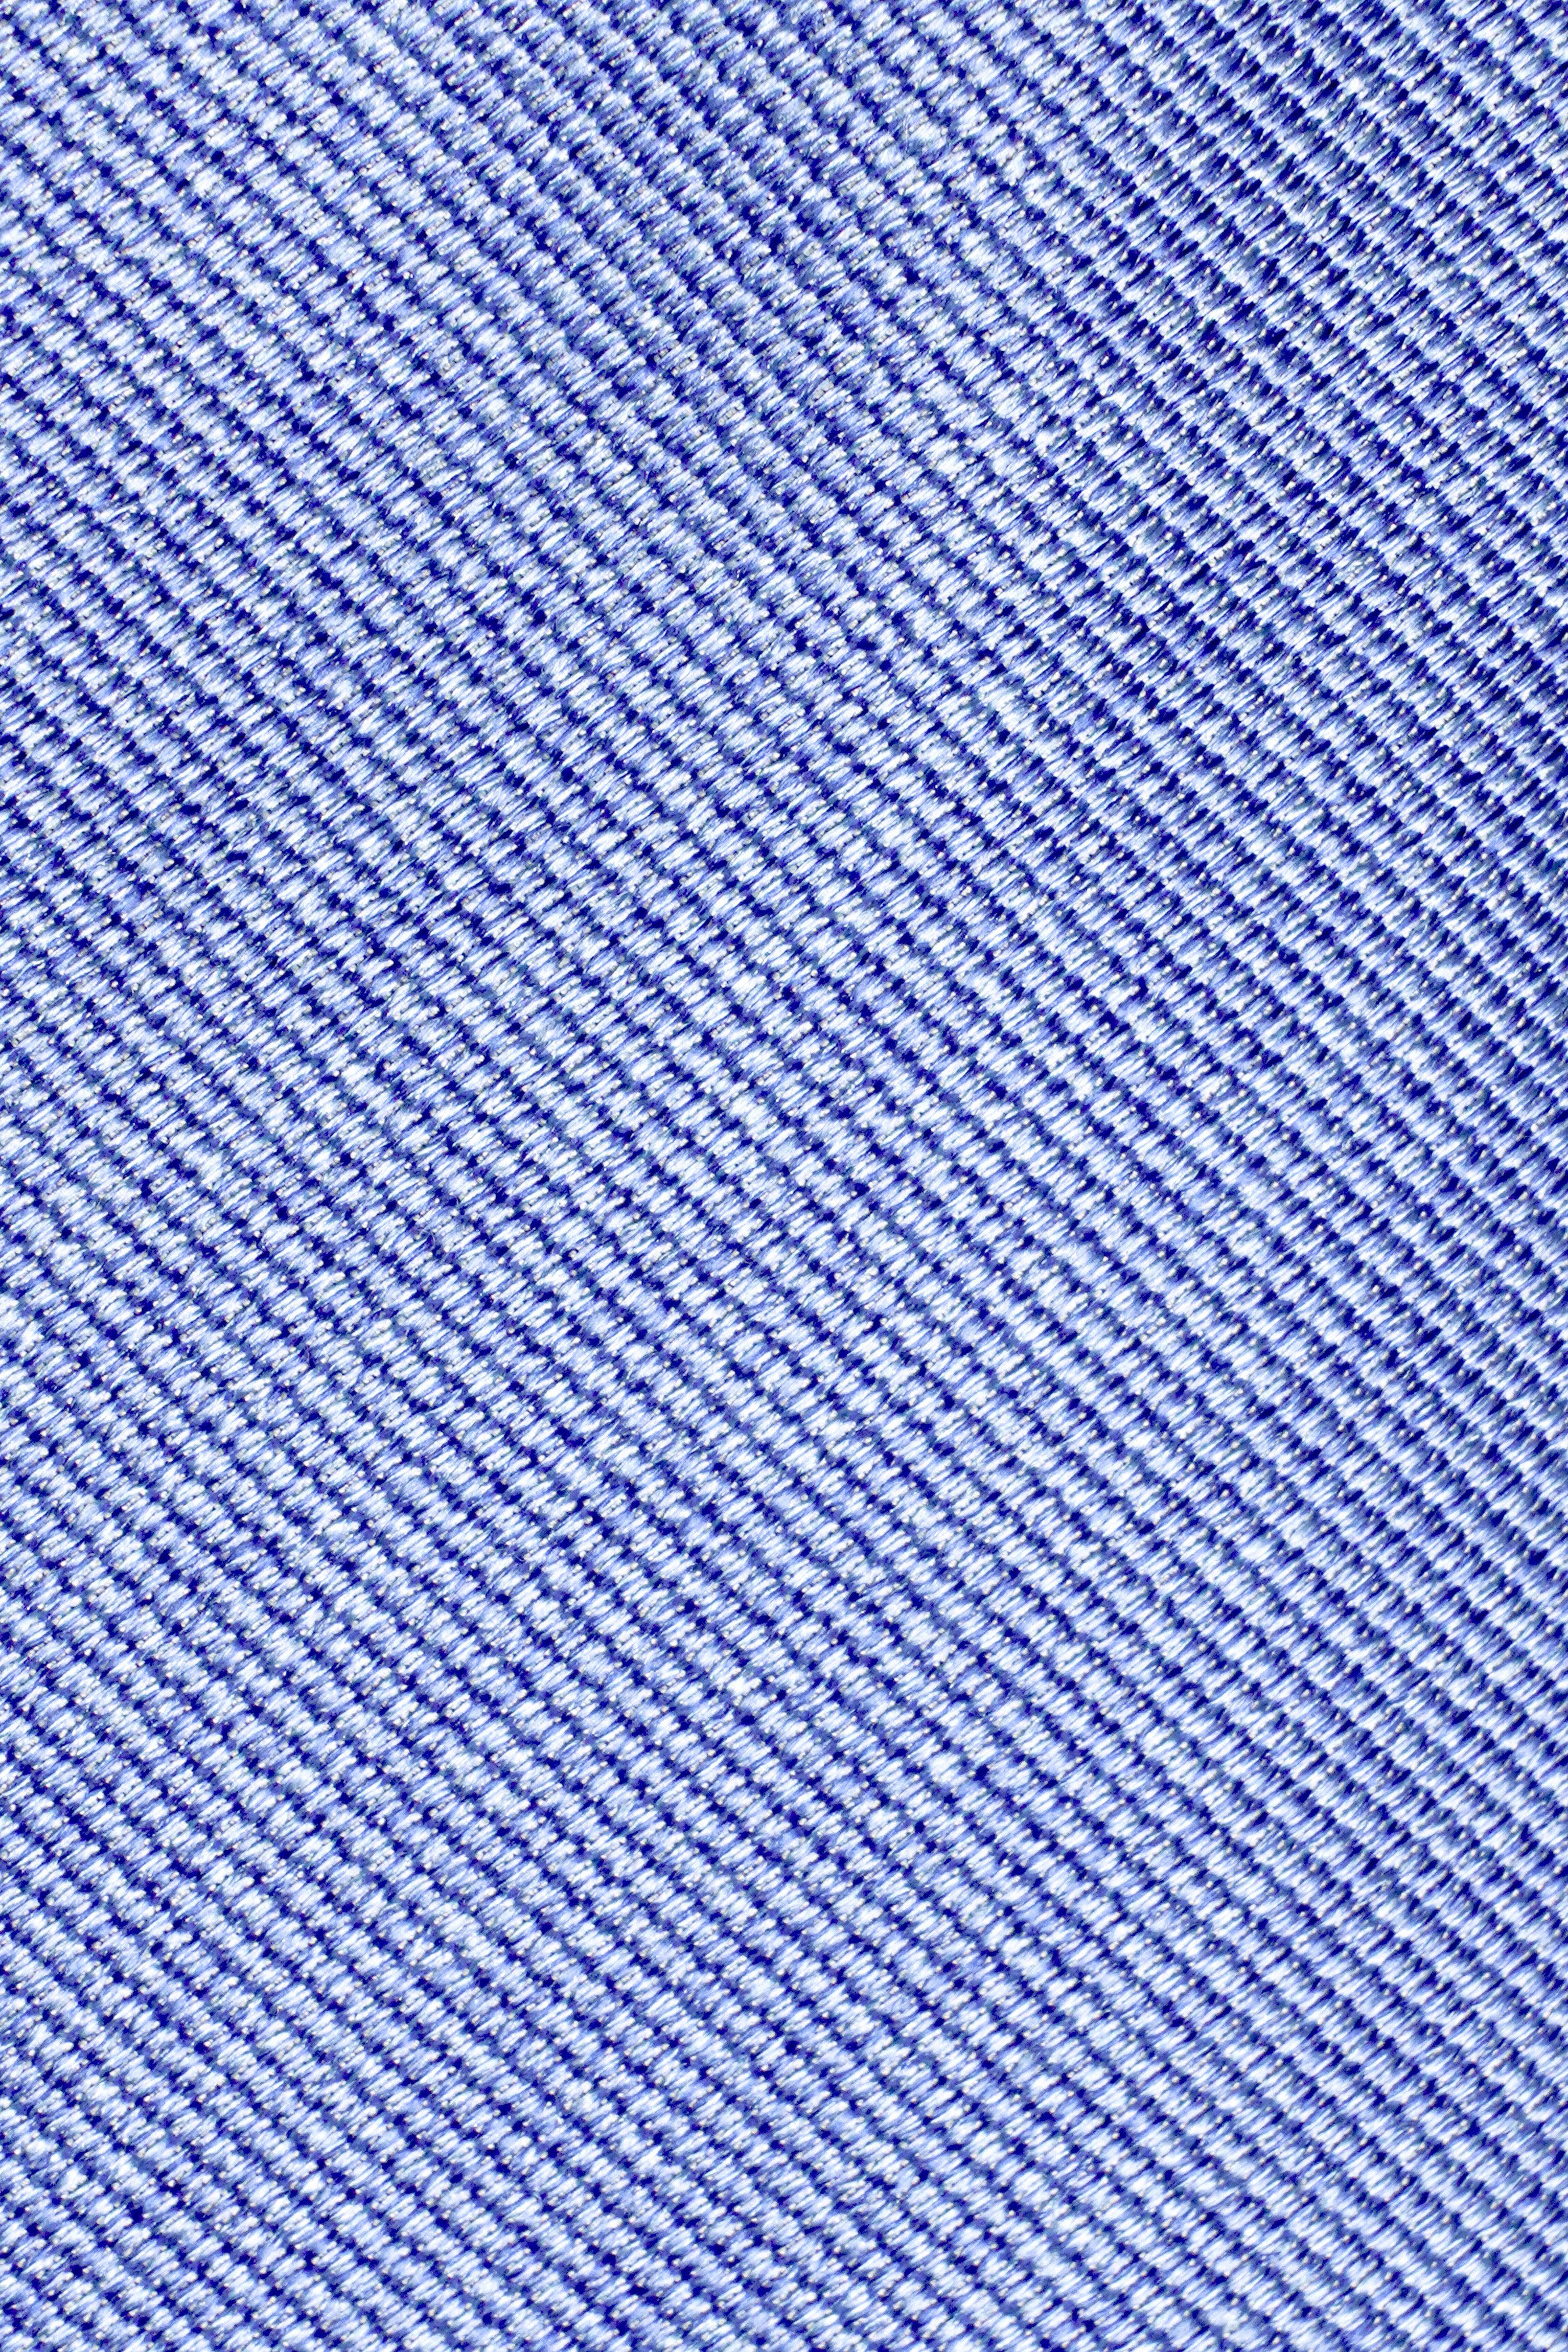 Vue alternative 1 Bowman cravate tissée unie en bleu palais